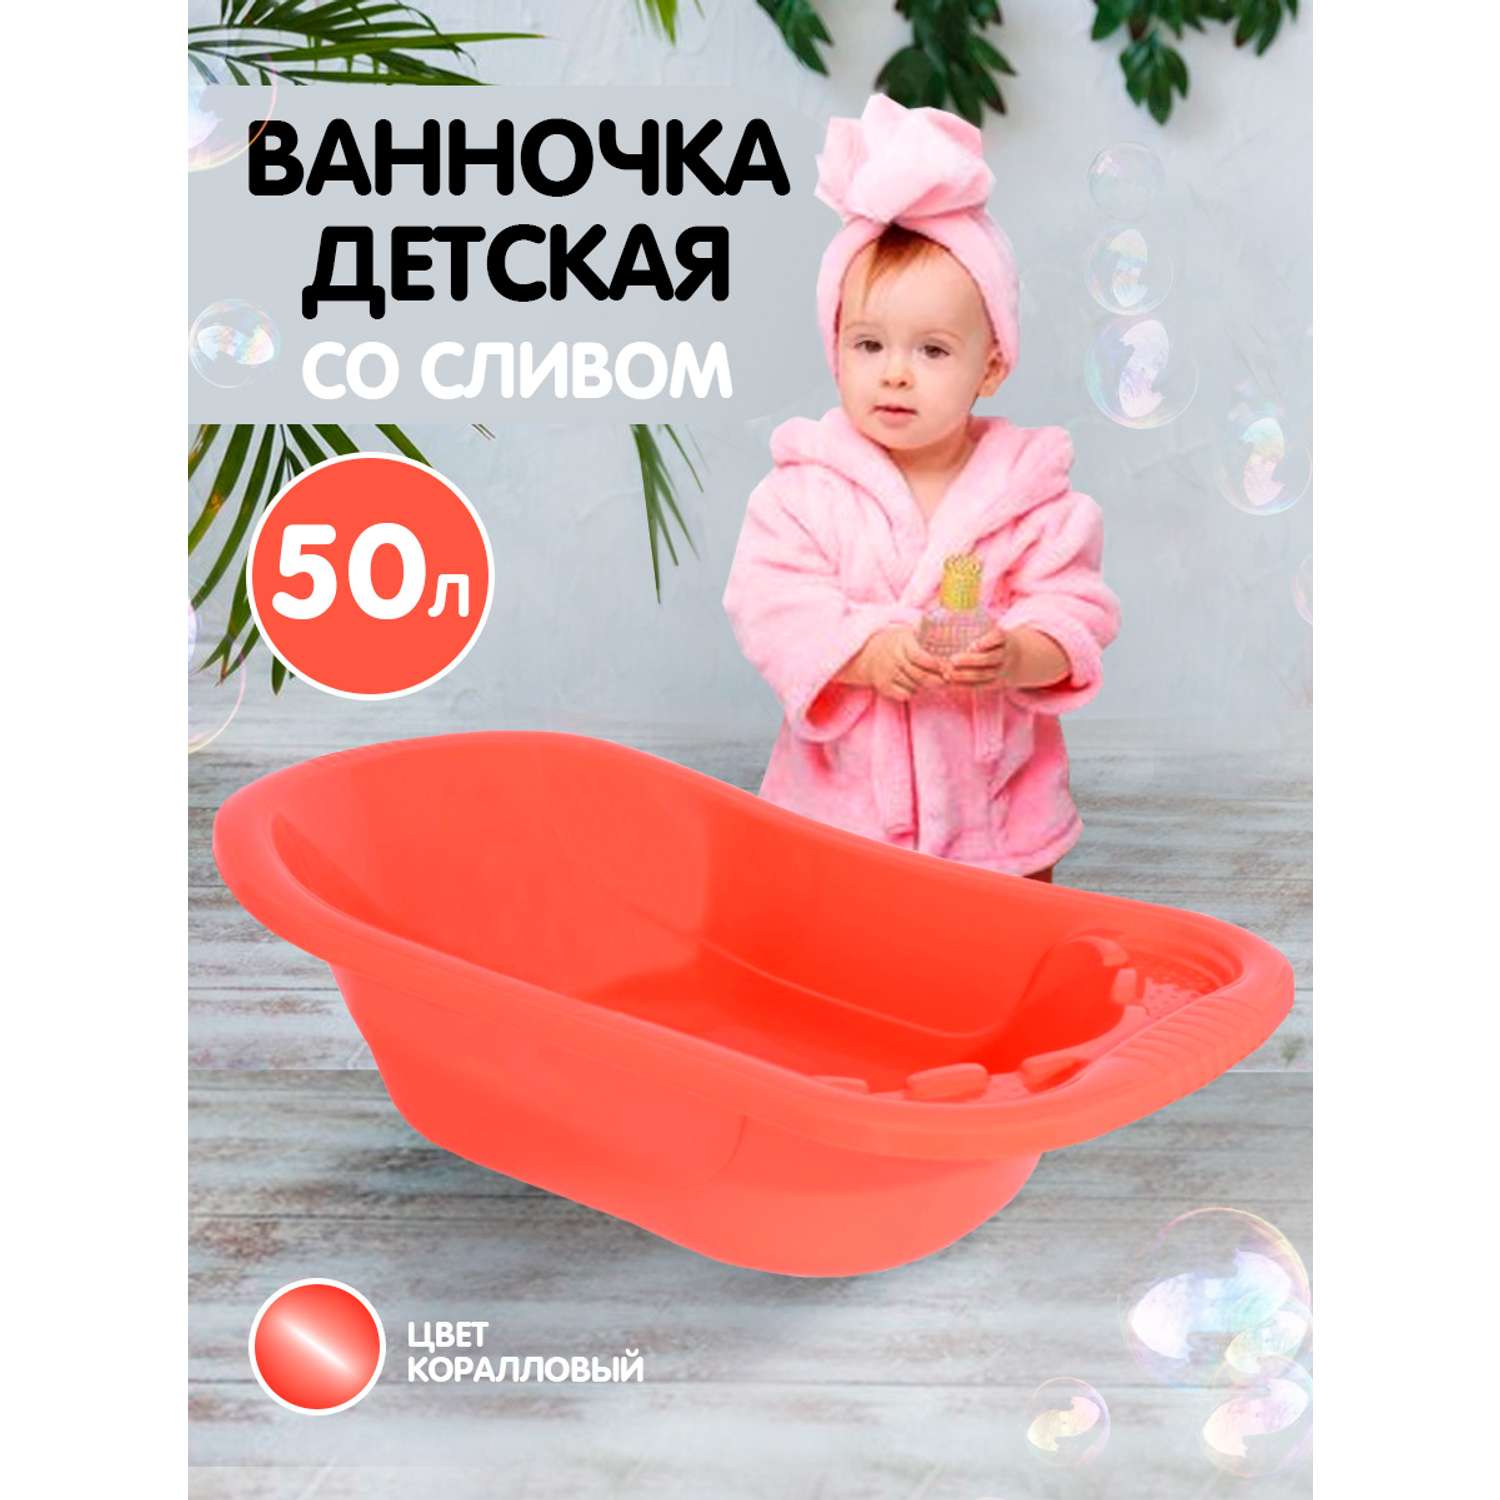 Ванна детская elfplast для купания со сливным клапаном коралловый 50 л - фото 2